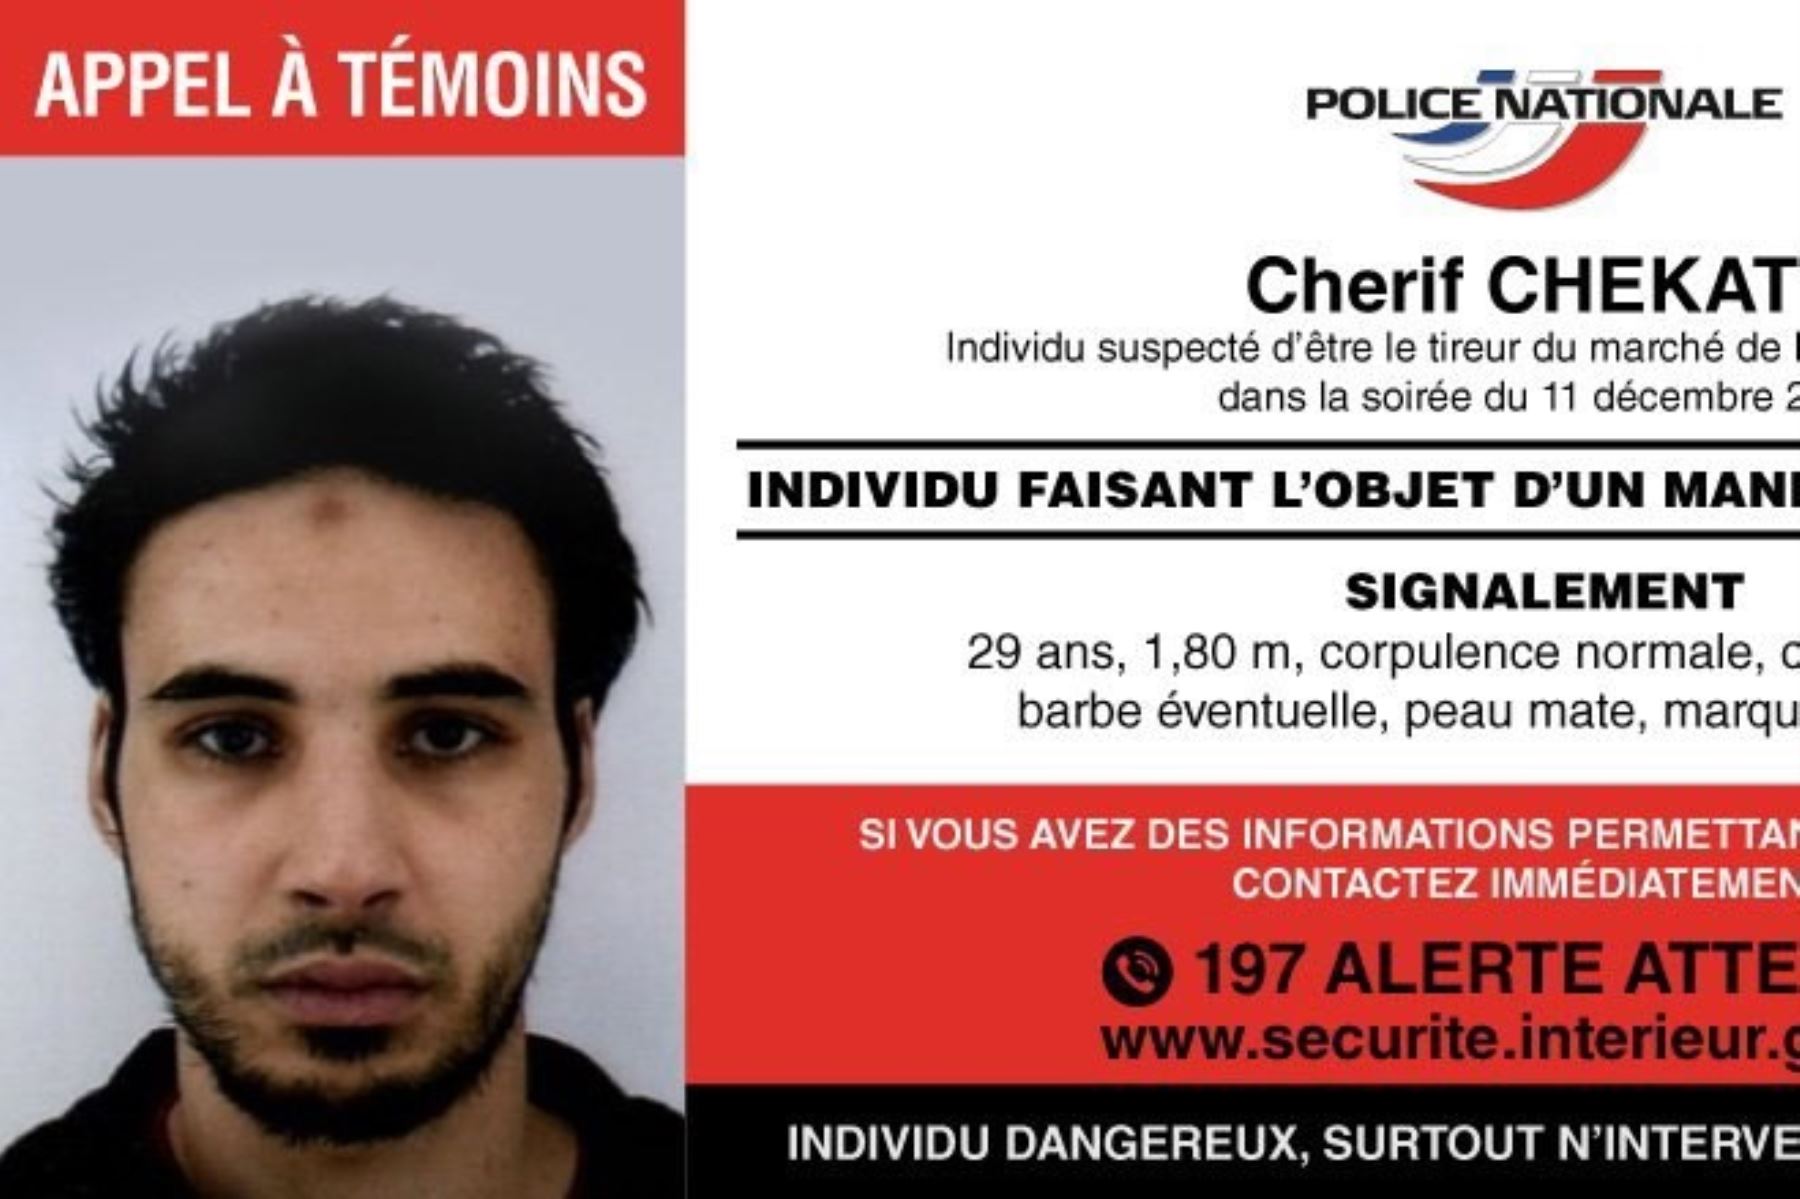 Presunto autor de atentado en Estrasburgo Chérif Chekatt abatido por policía francesa